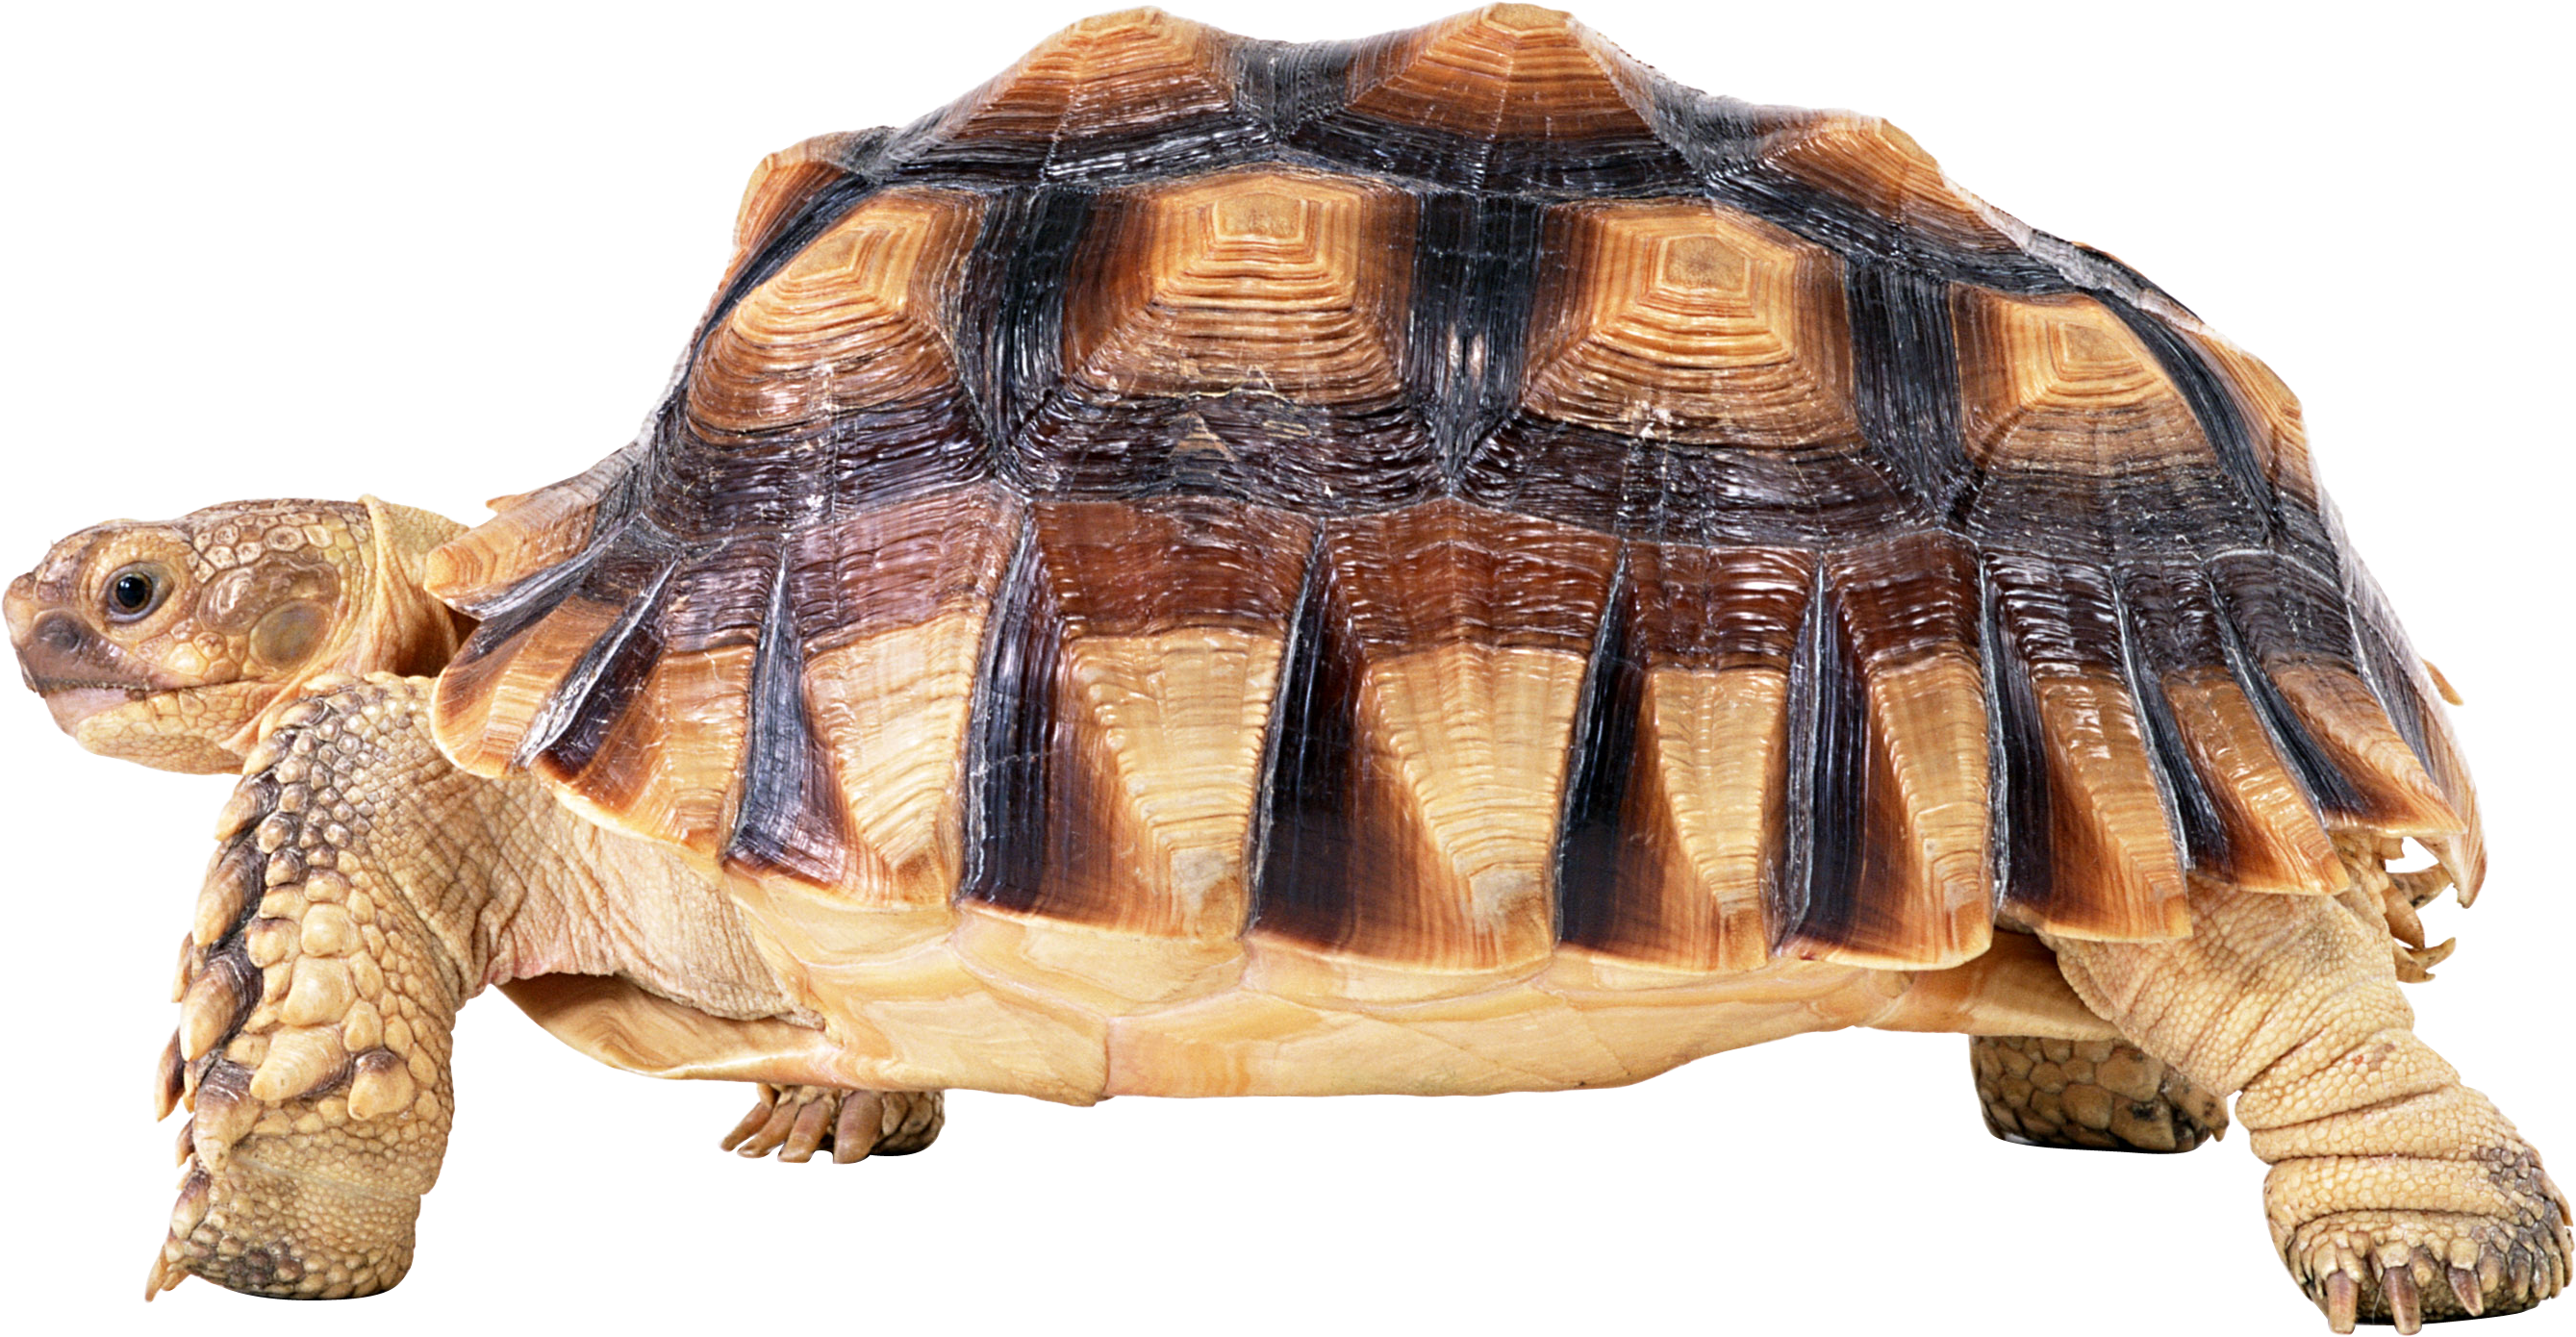 Tortoise PNG HD Quality